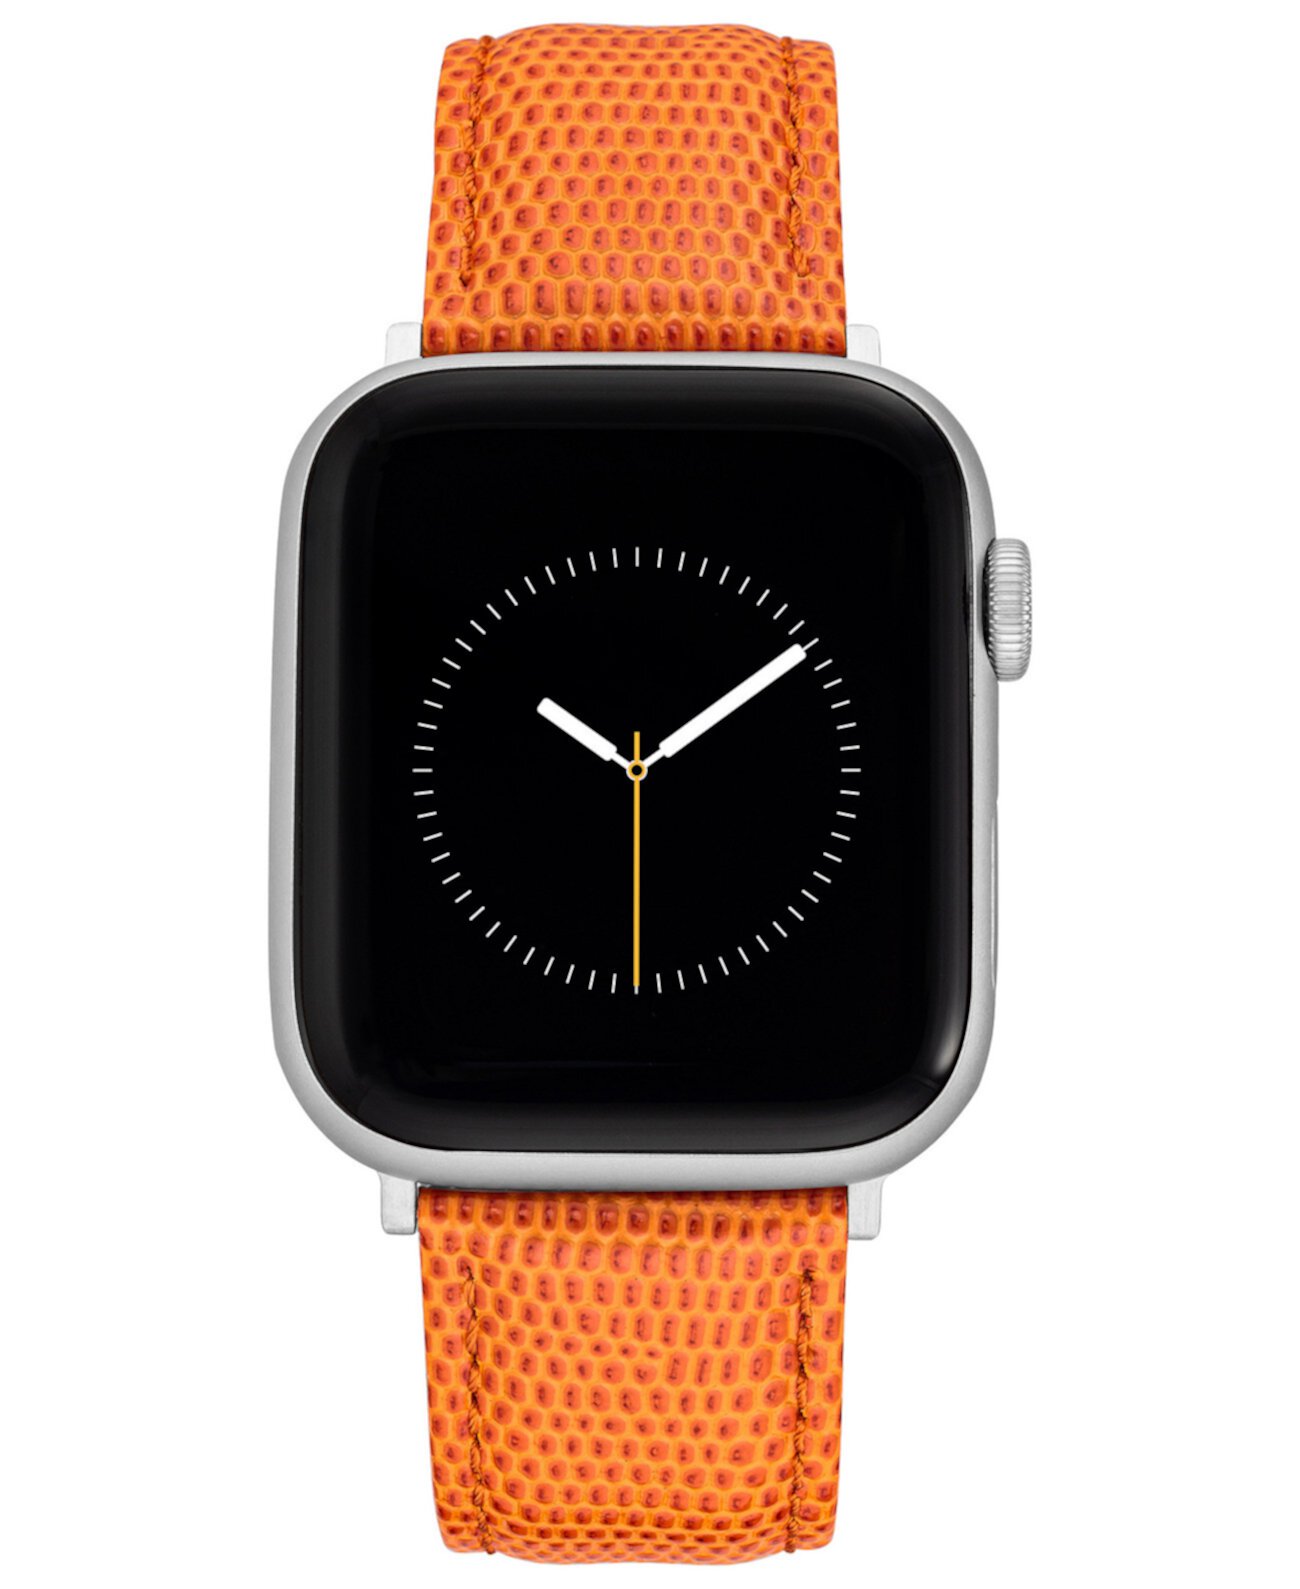 Ремешок из натуральной кожи с текстурой оранжевого цвета ящерицы, совместимый с Apple Watch 38/40/41 мм WITHit